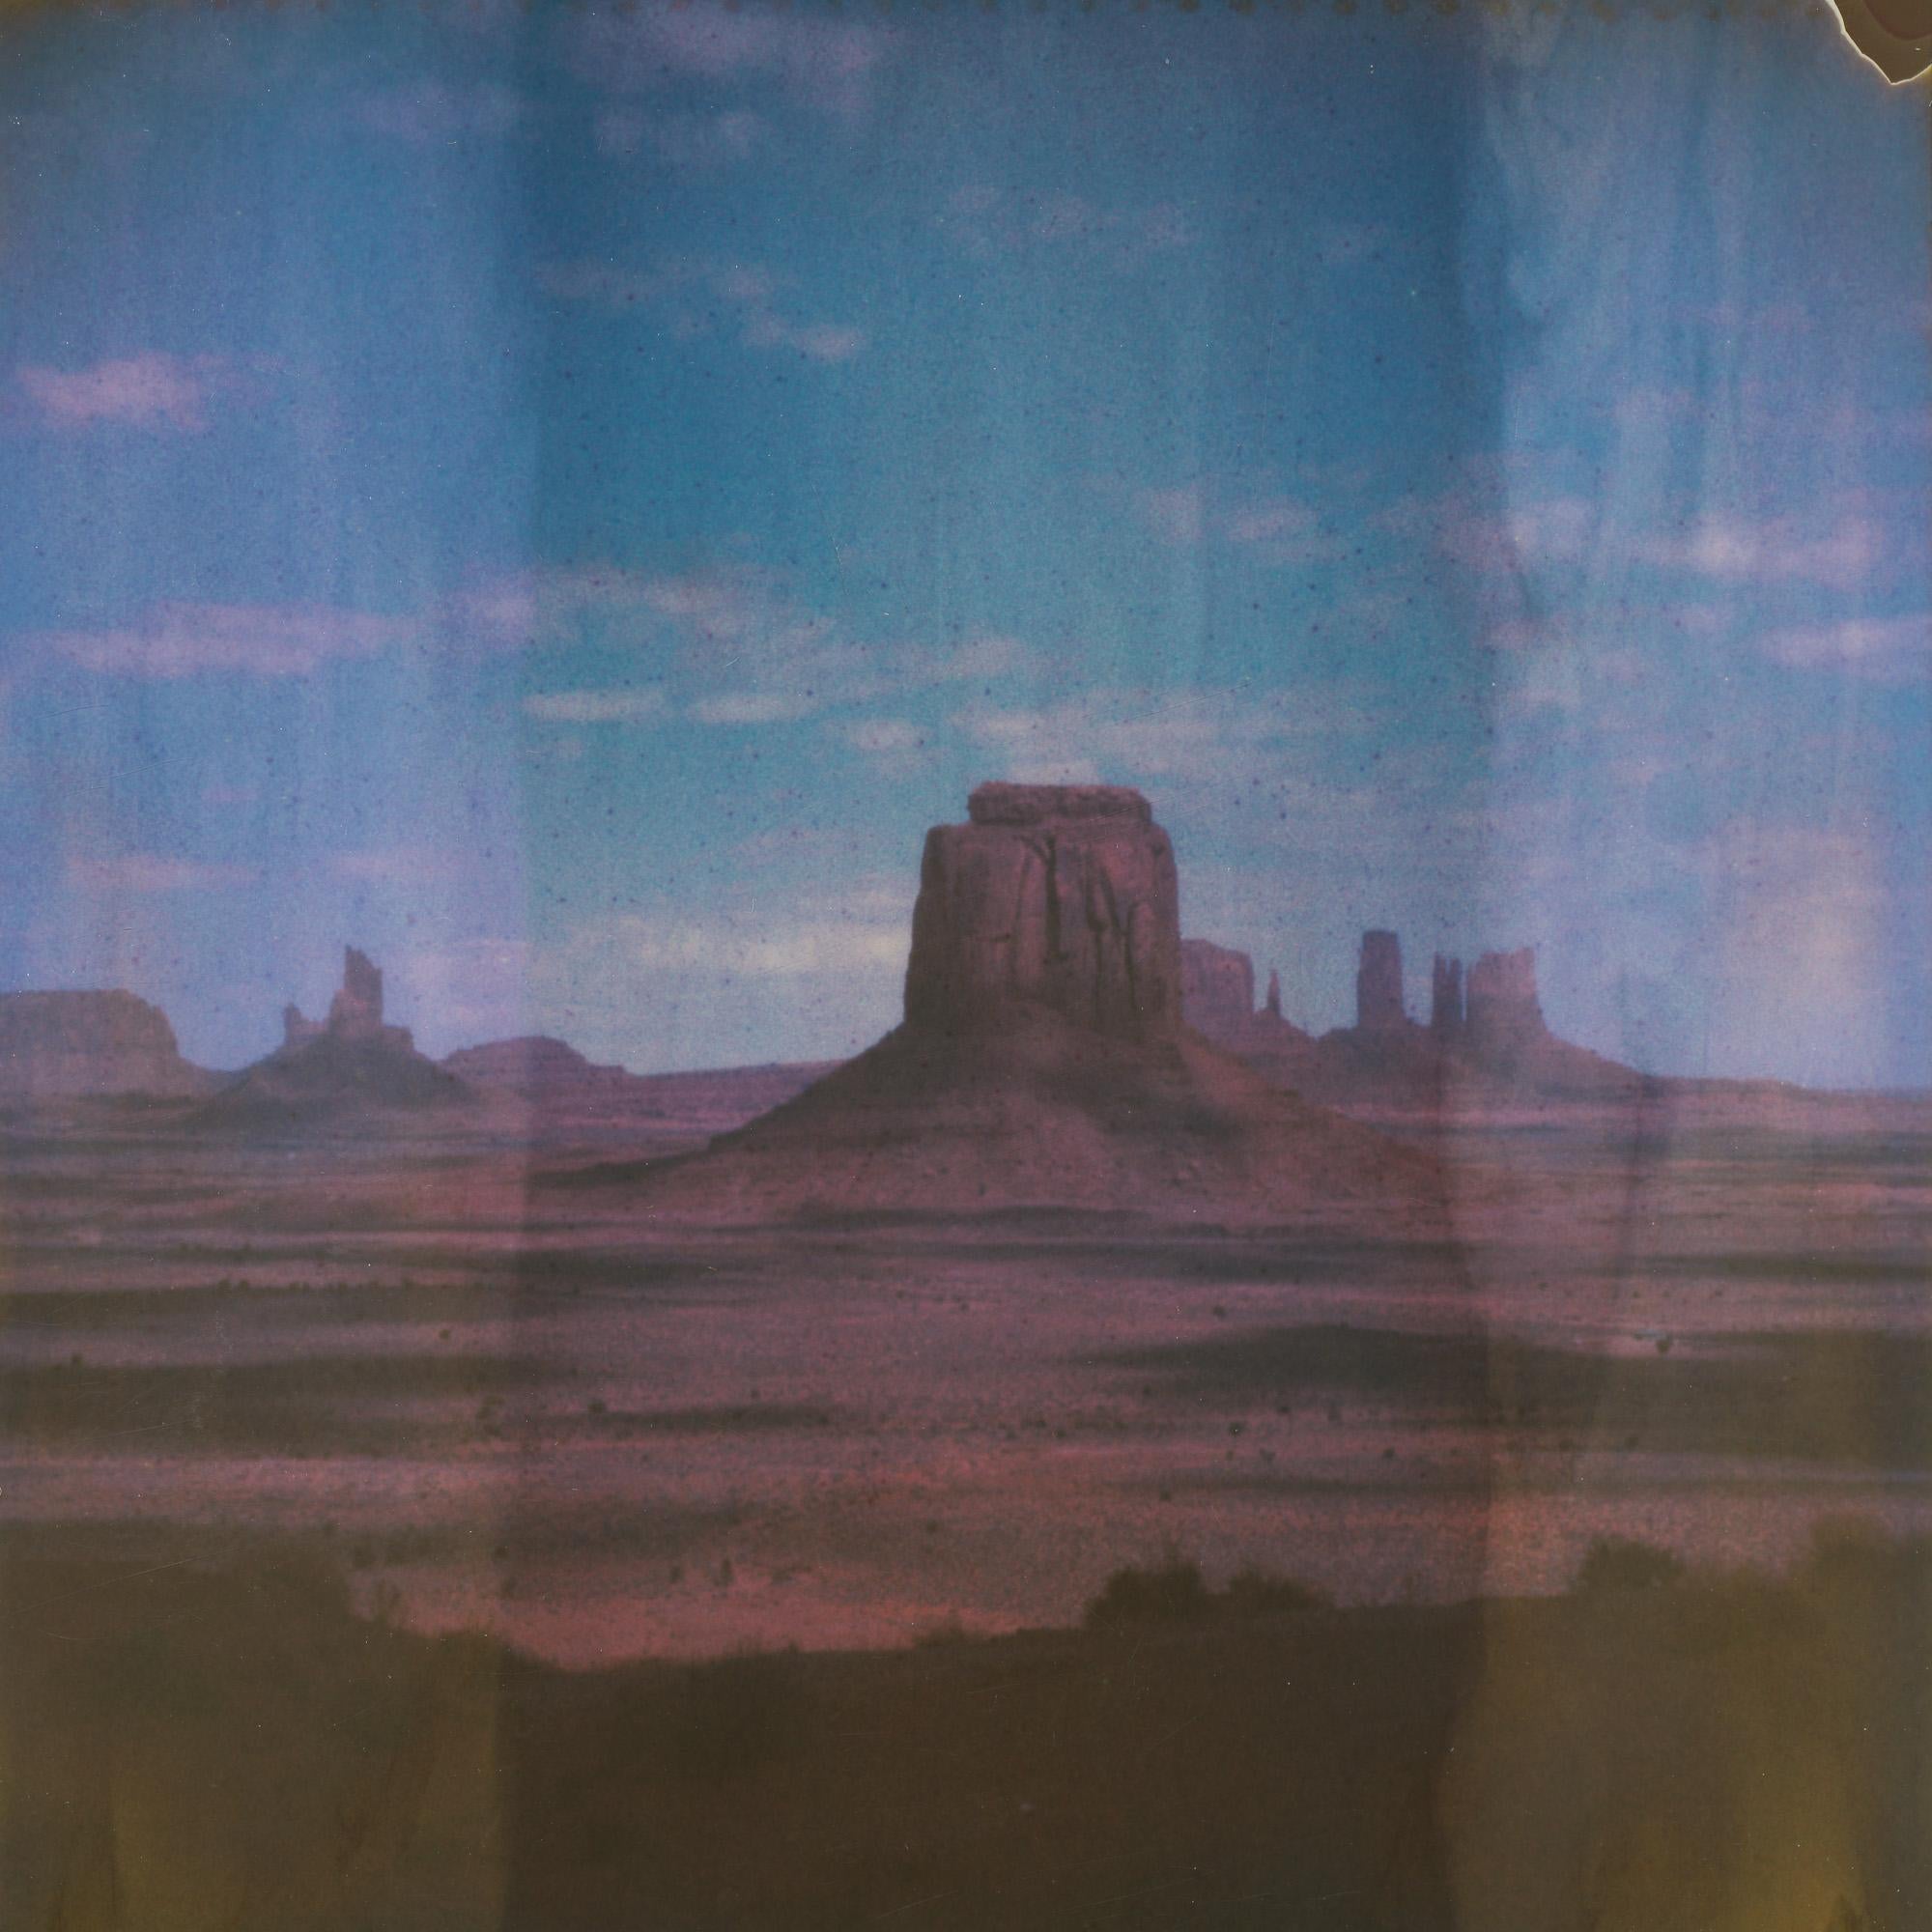 Sacred (50x50cm) - 21st Century, Polaroid, Landscape, Color, Contemporary